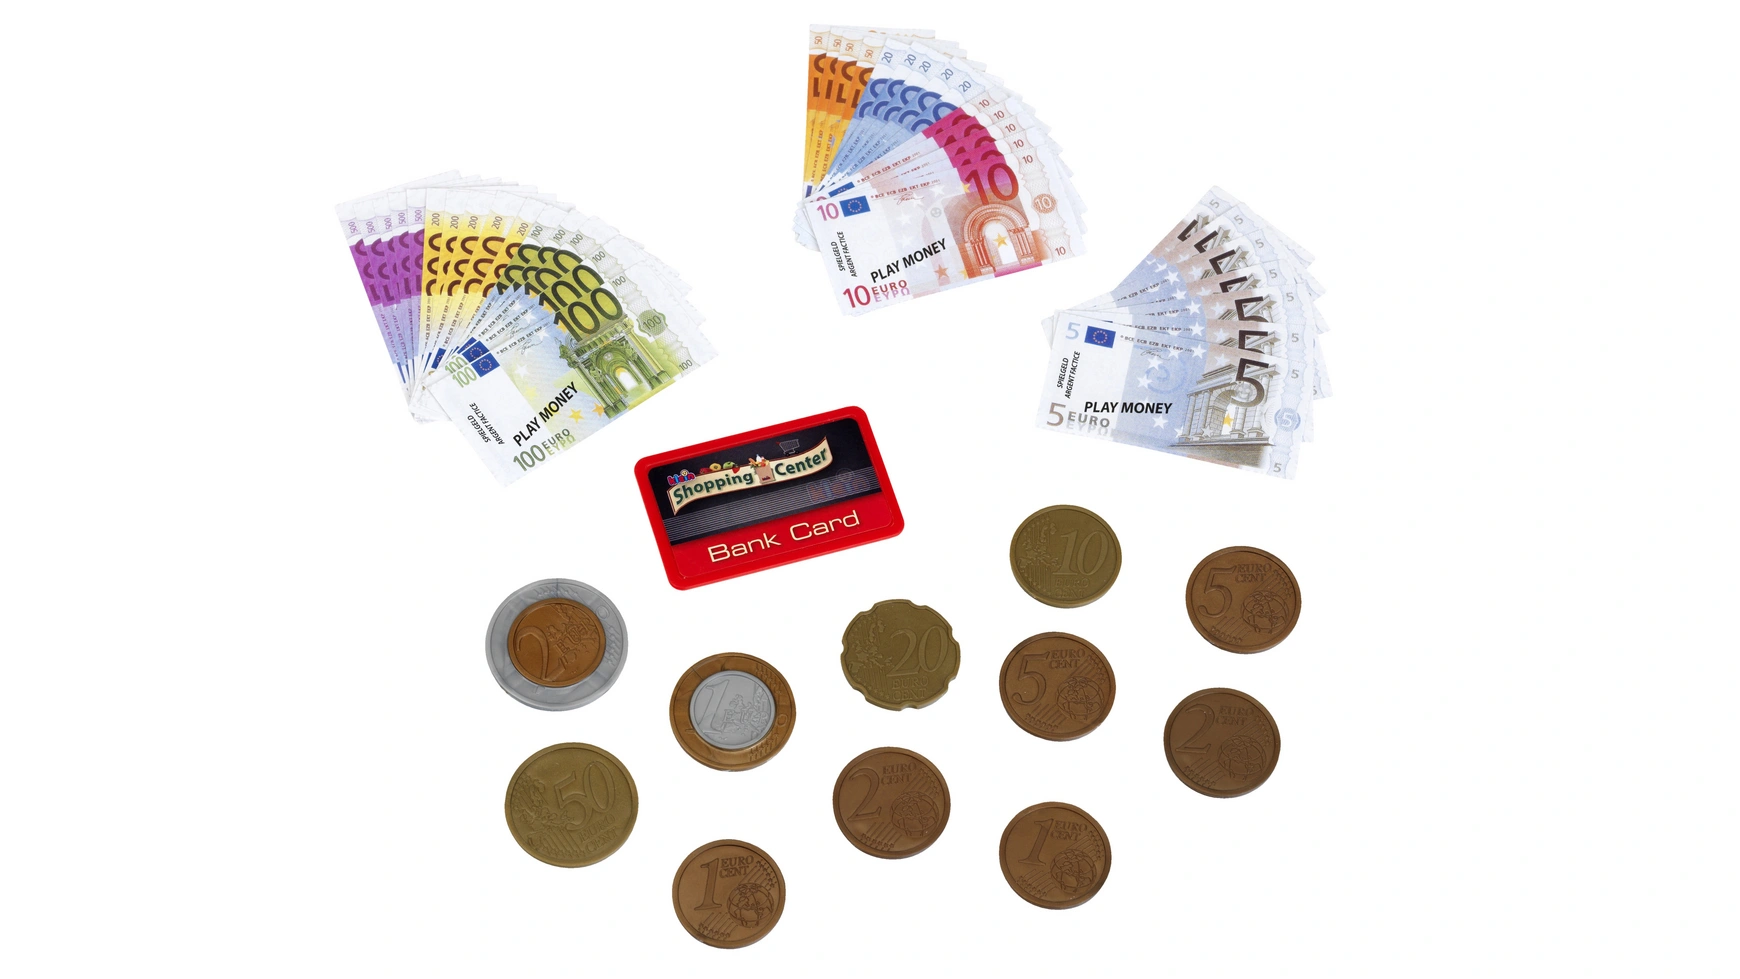 цена Тео Klein деньги евро с кредитной картой I 37 банкнот и 11 монет от монеты в 1 цент до банкноты в 500